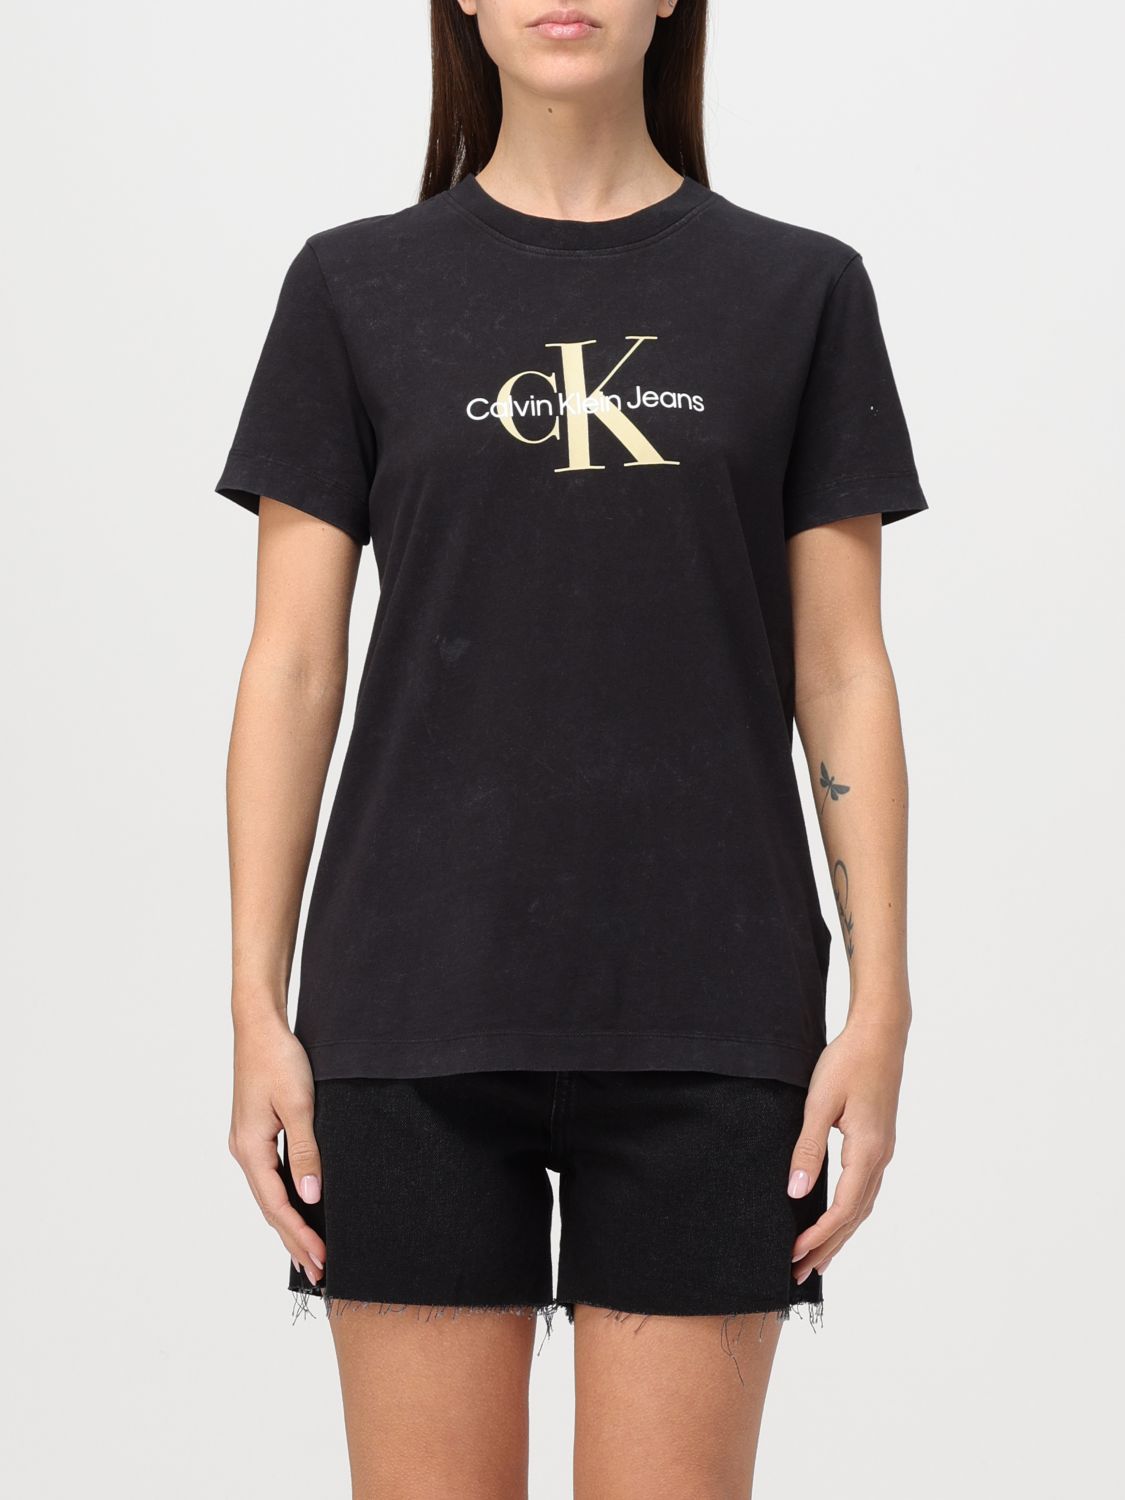 Ck Jeans T-Shirt CK JEANS Woman colour Black